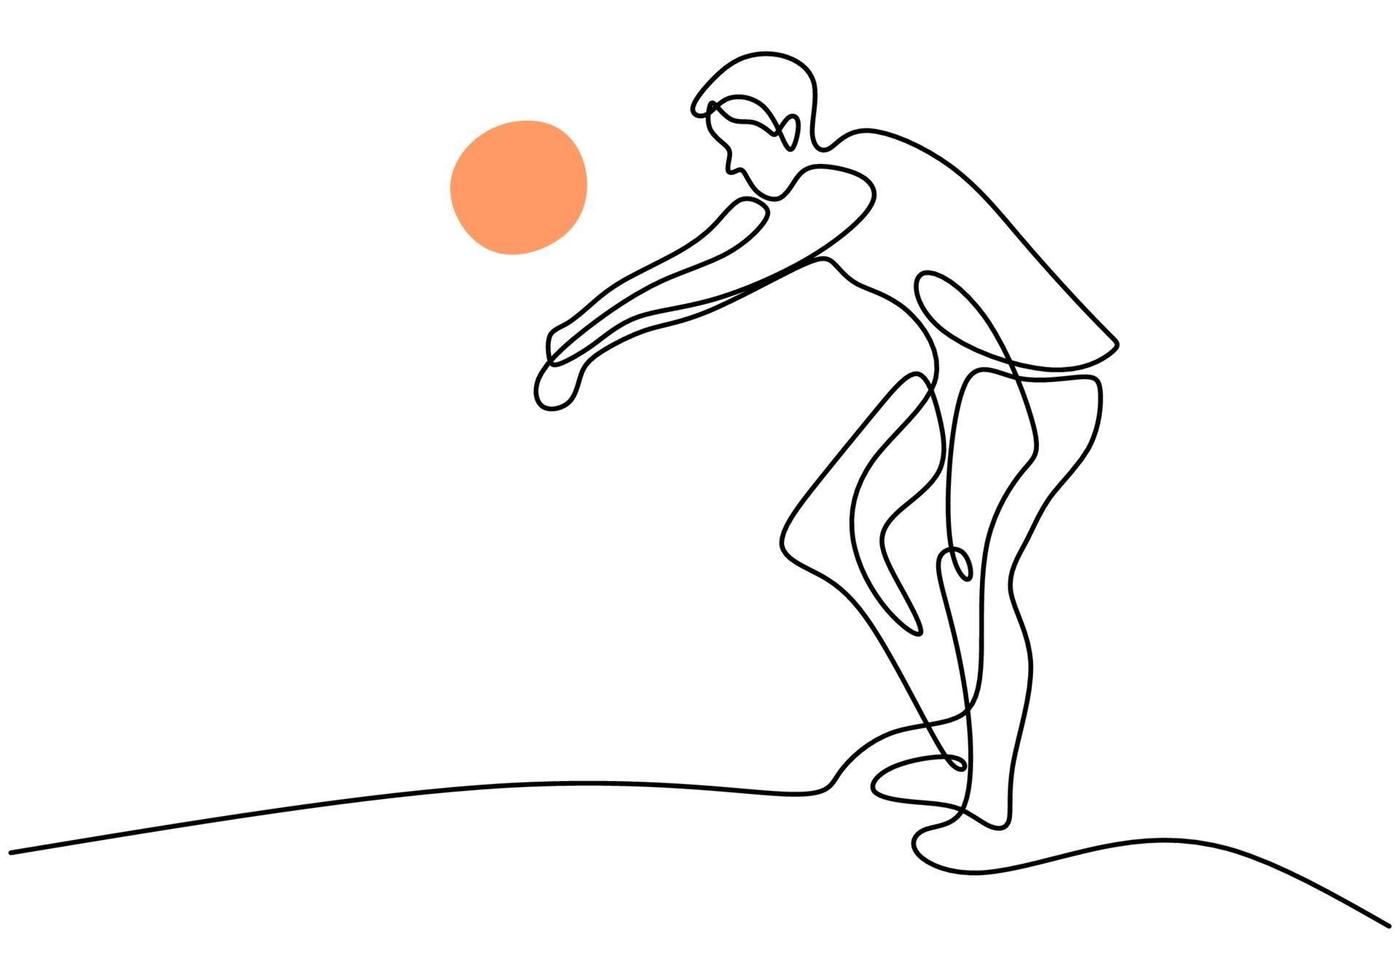 un dibujo de línea continua joven jugador de voleibol profesional masculino en acción. Hombre enérgico jugando una pelota en la cancha aislada sobre fondo blanco. concepto de deporte de equipo competitivo saludable vector